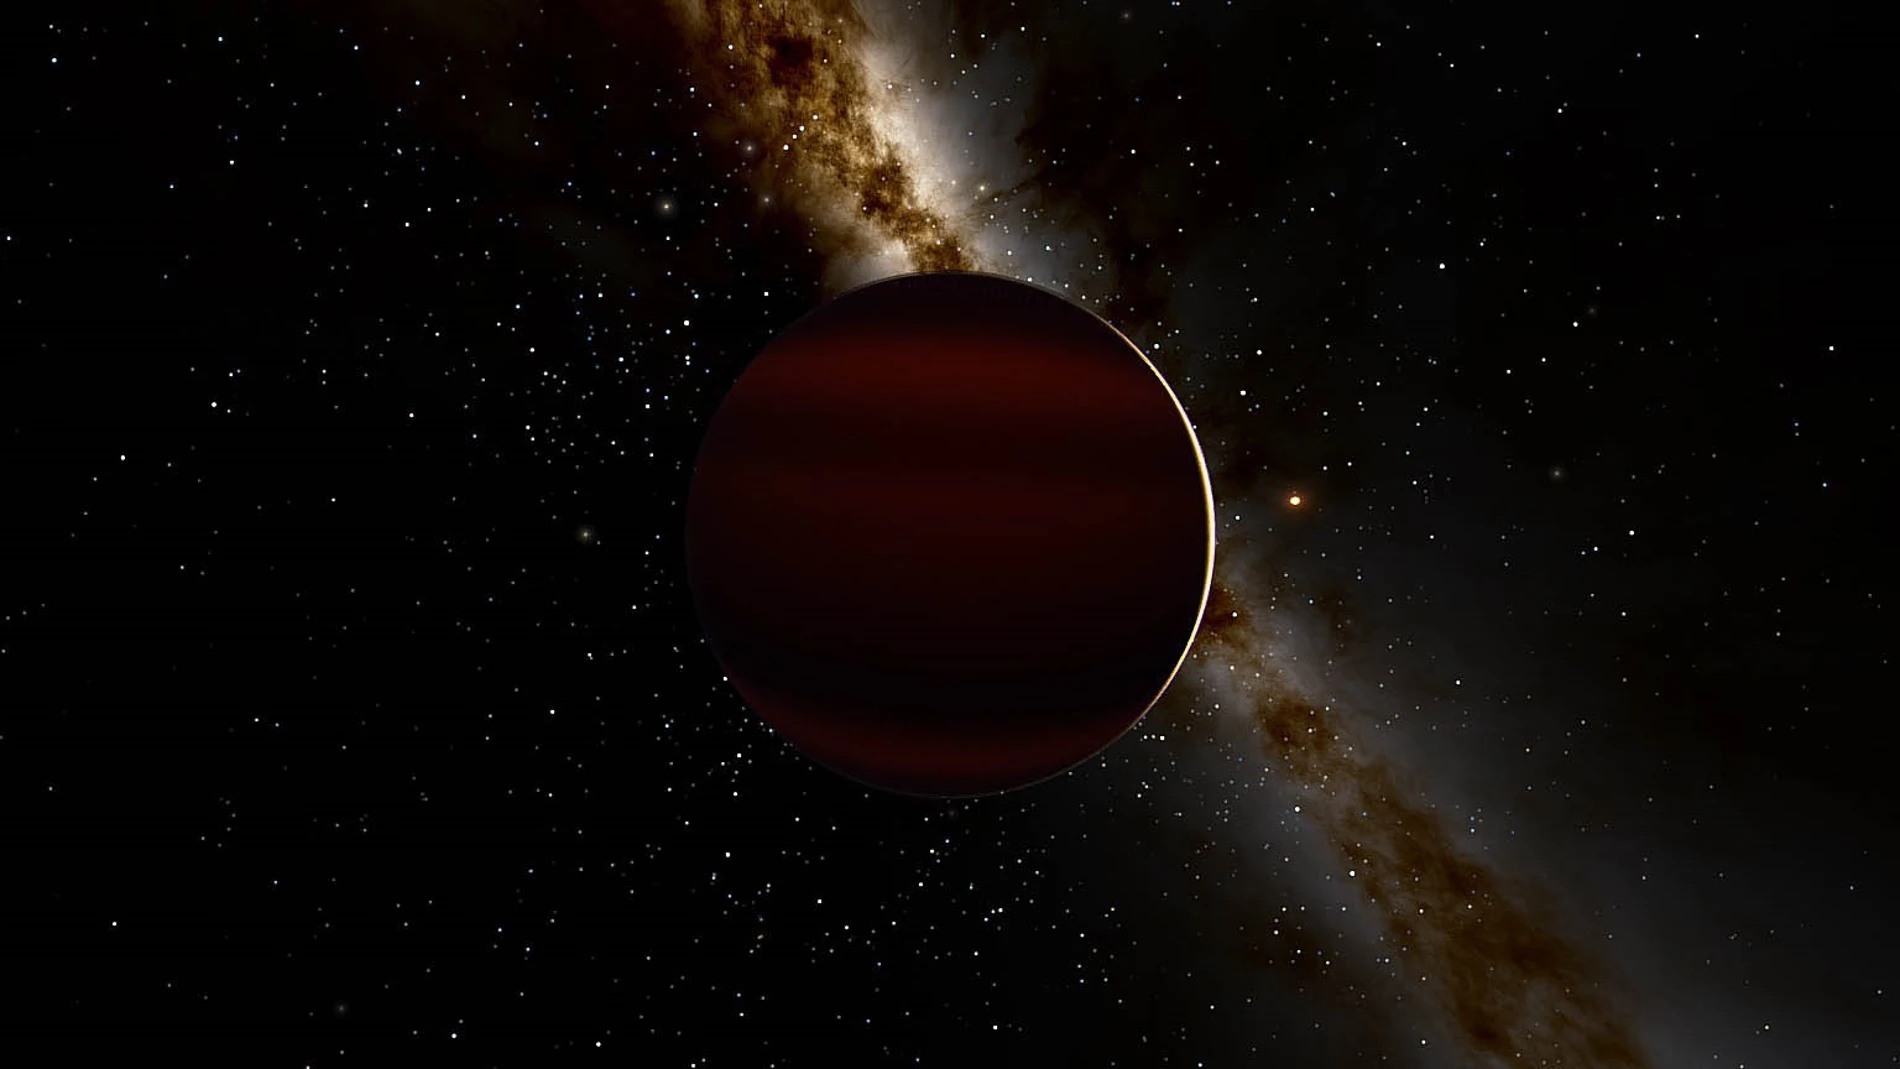 Pareja de enanas marrones separadas por 78.9 años luz de distancia. WISE 2150-7520AB (W2150AB)